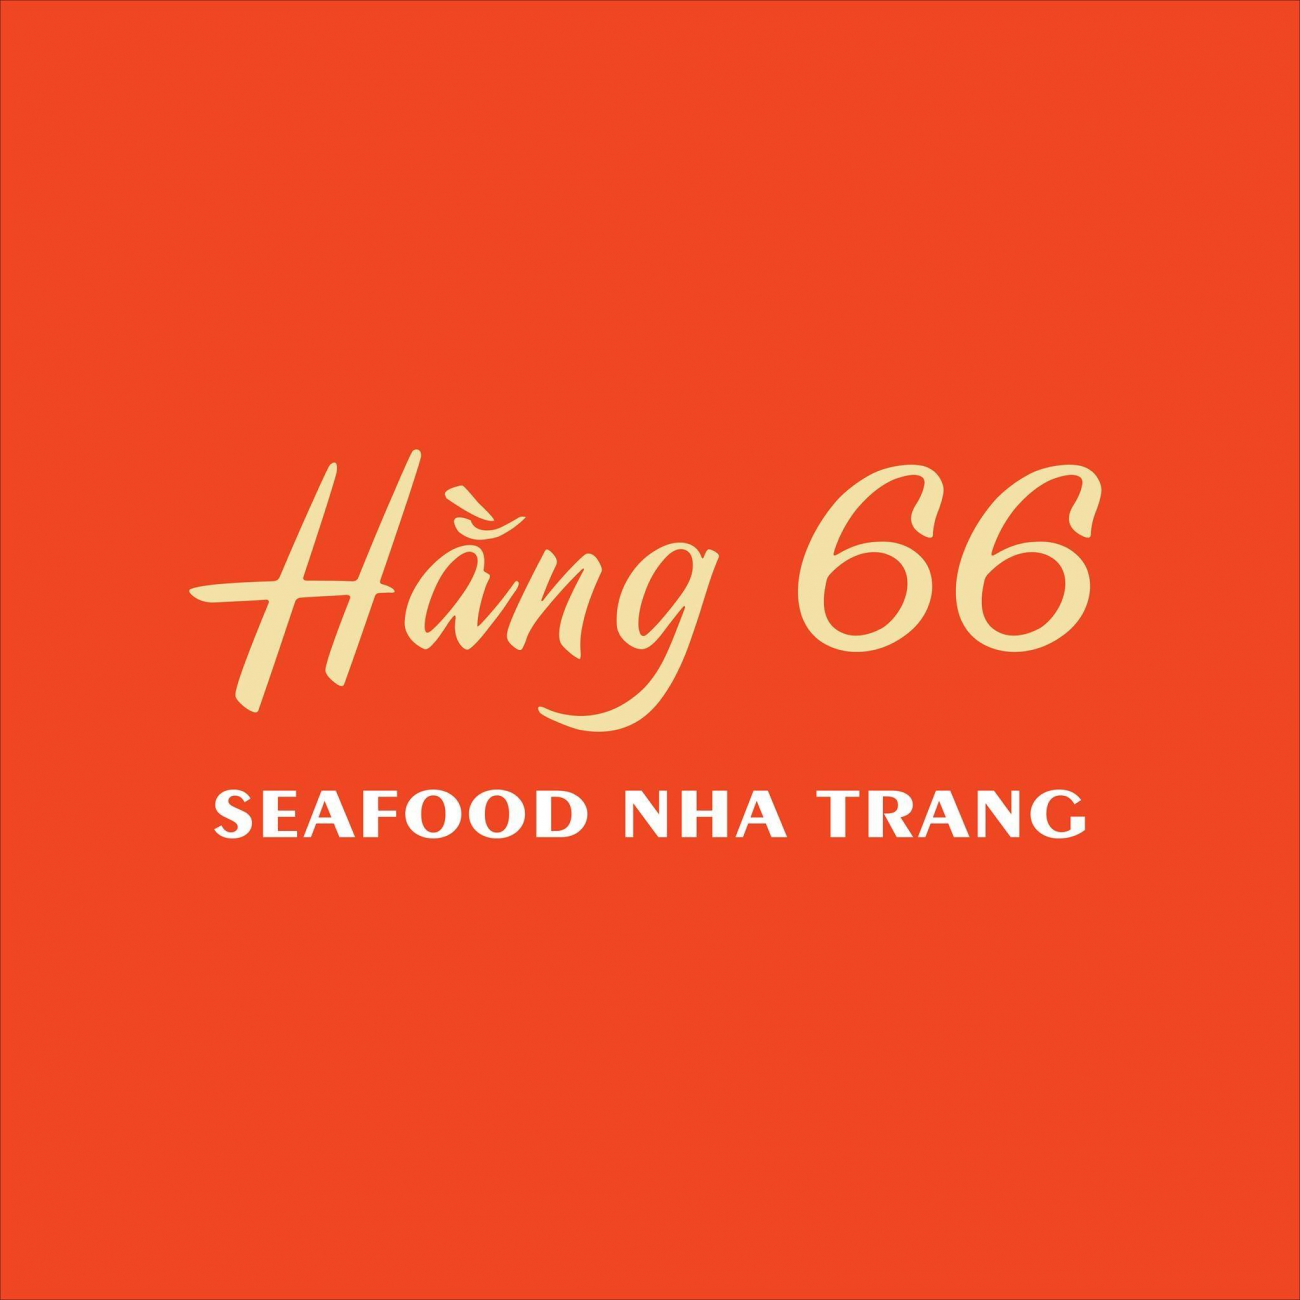 Cửa hàng hải sản tươi sống Hằng 66 - Nha Trang